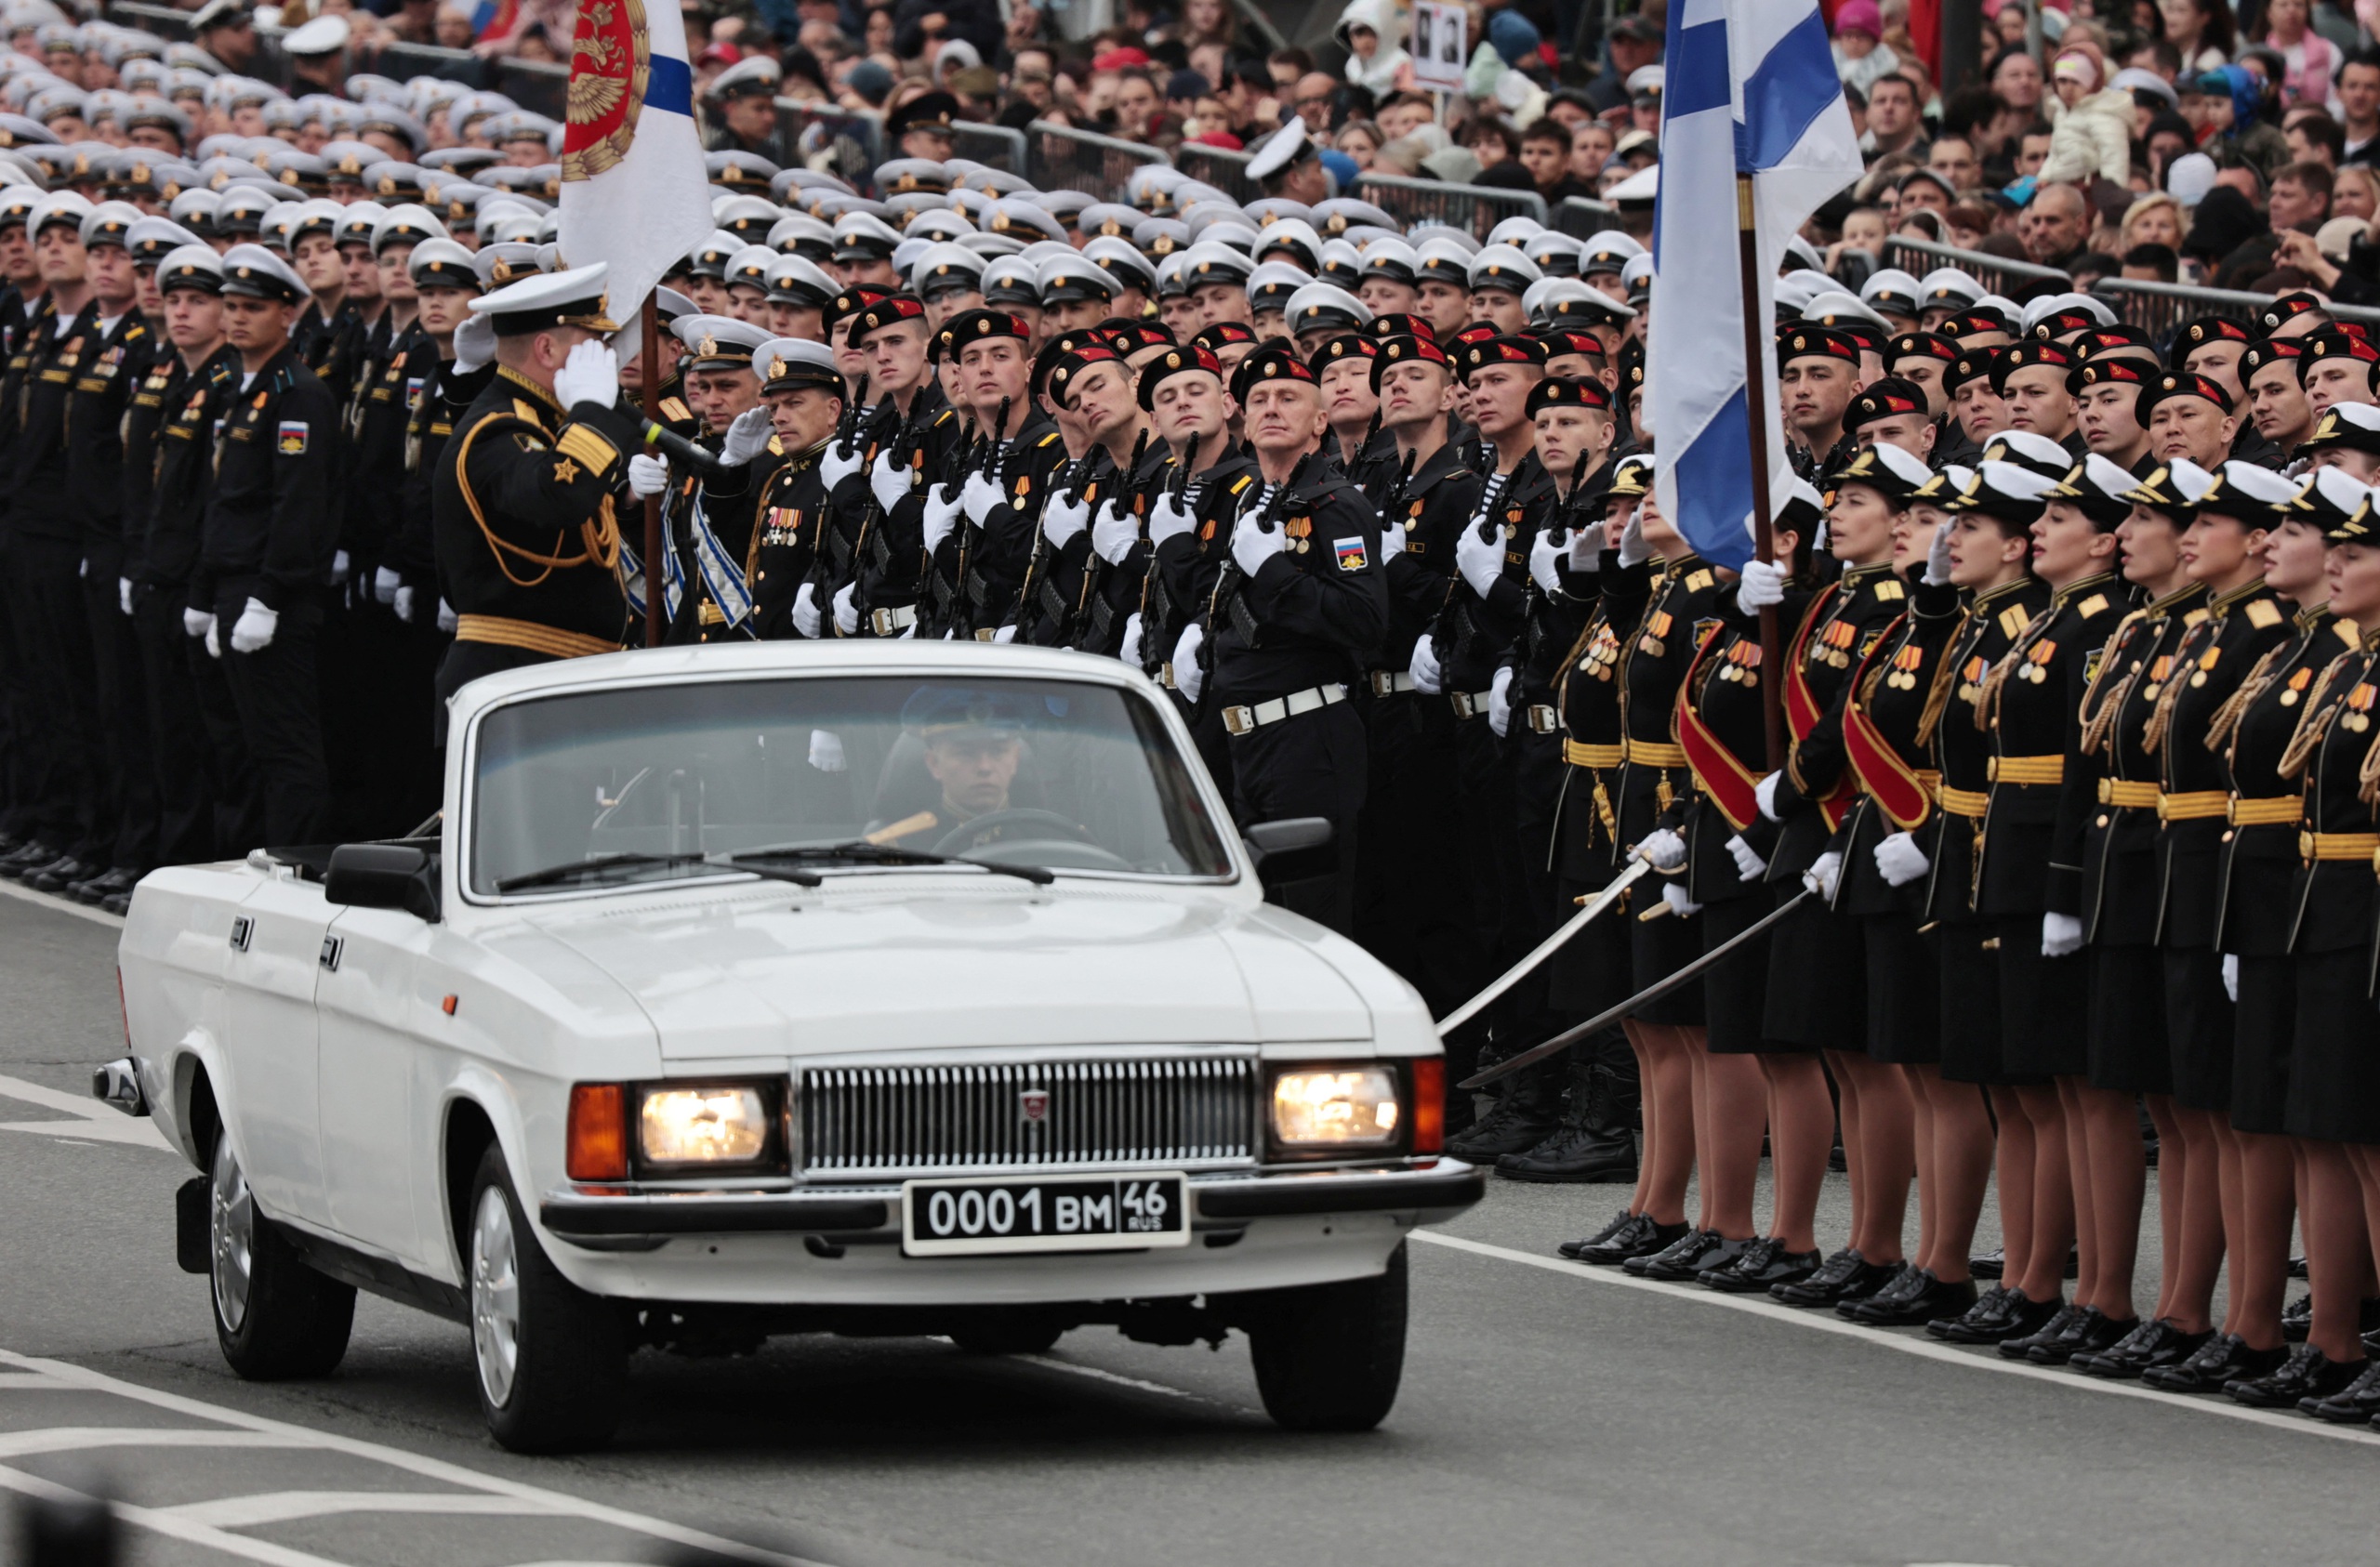 Ngoài Moscow, Nga còn tổ chức lễ duyệt binh tại Vladivostok và các thành phố lớn khác trên cả nước